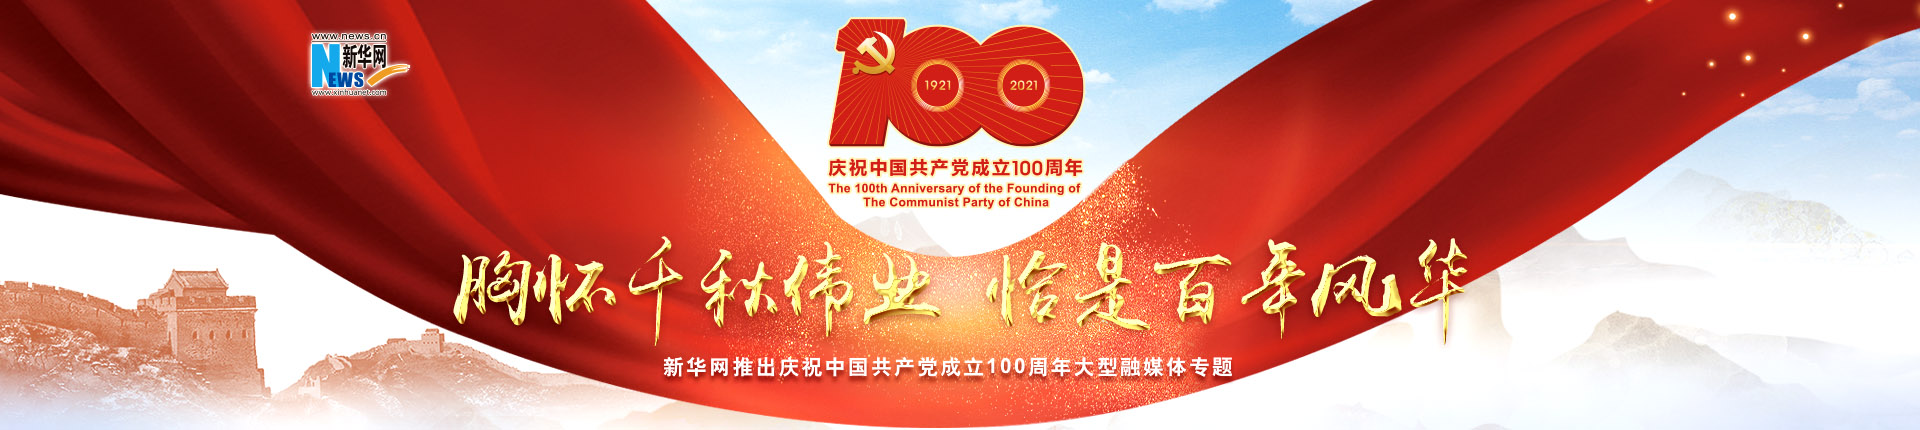 新华网推出庆祝中国共产党成立100周年大型融媒体专题